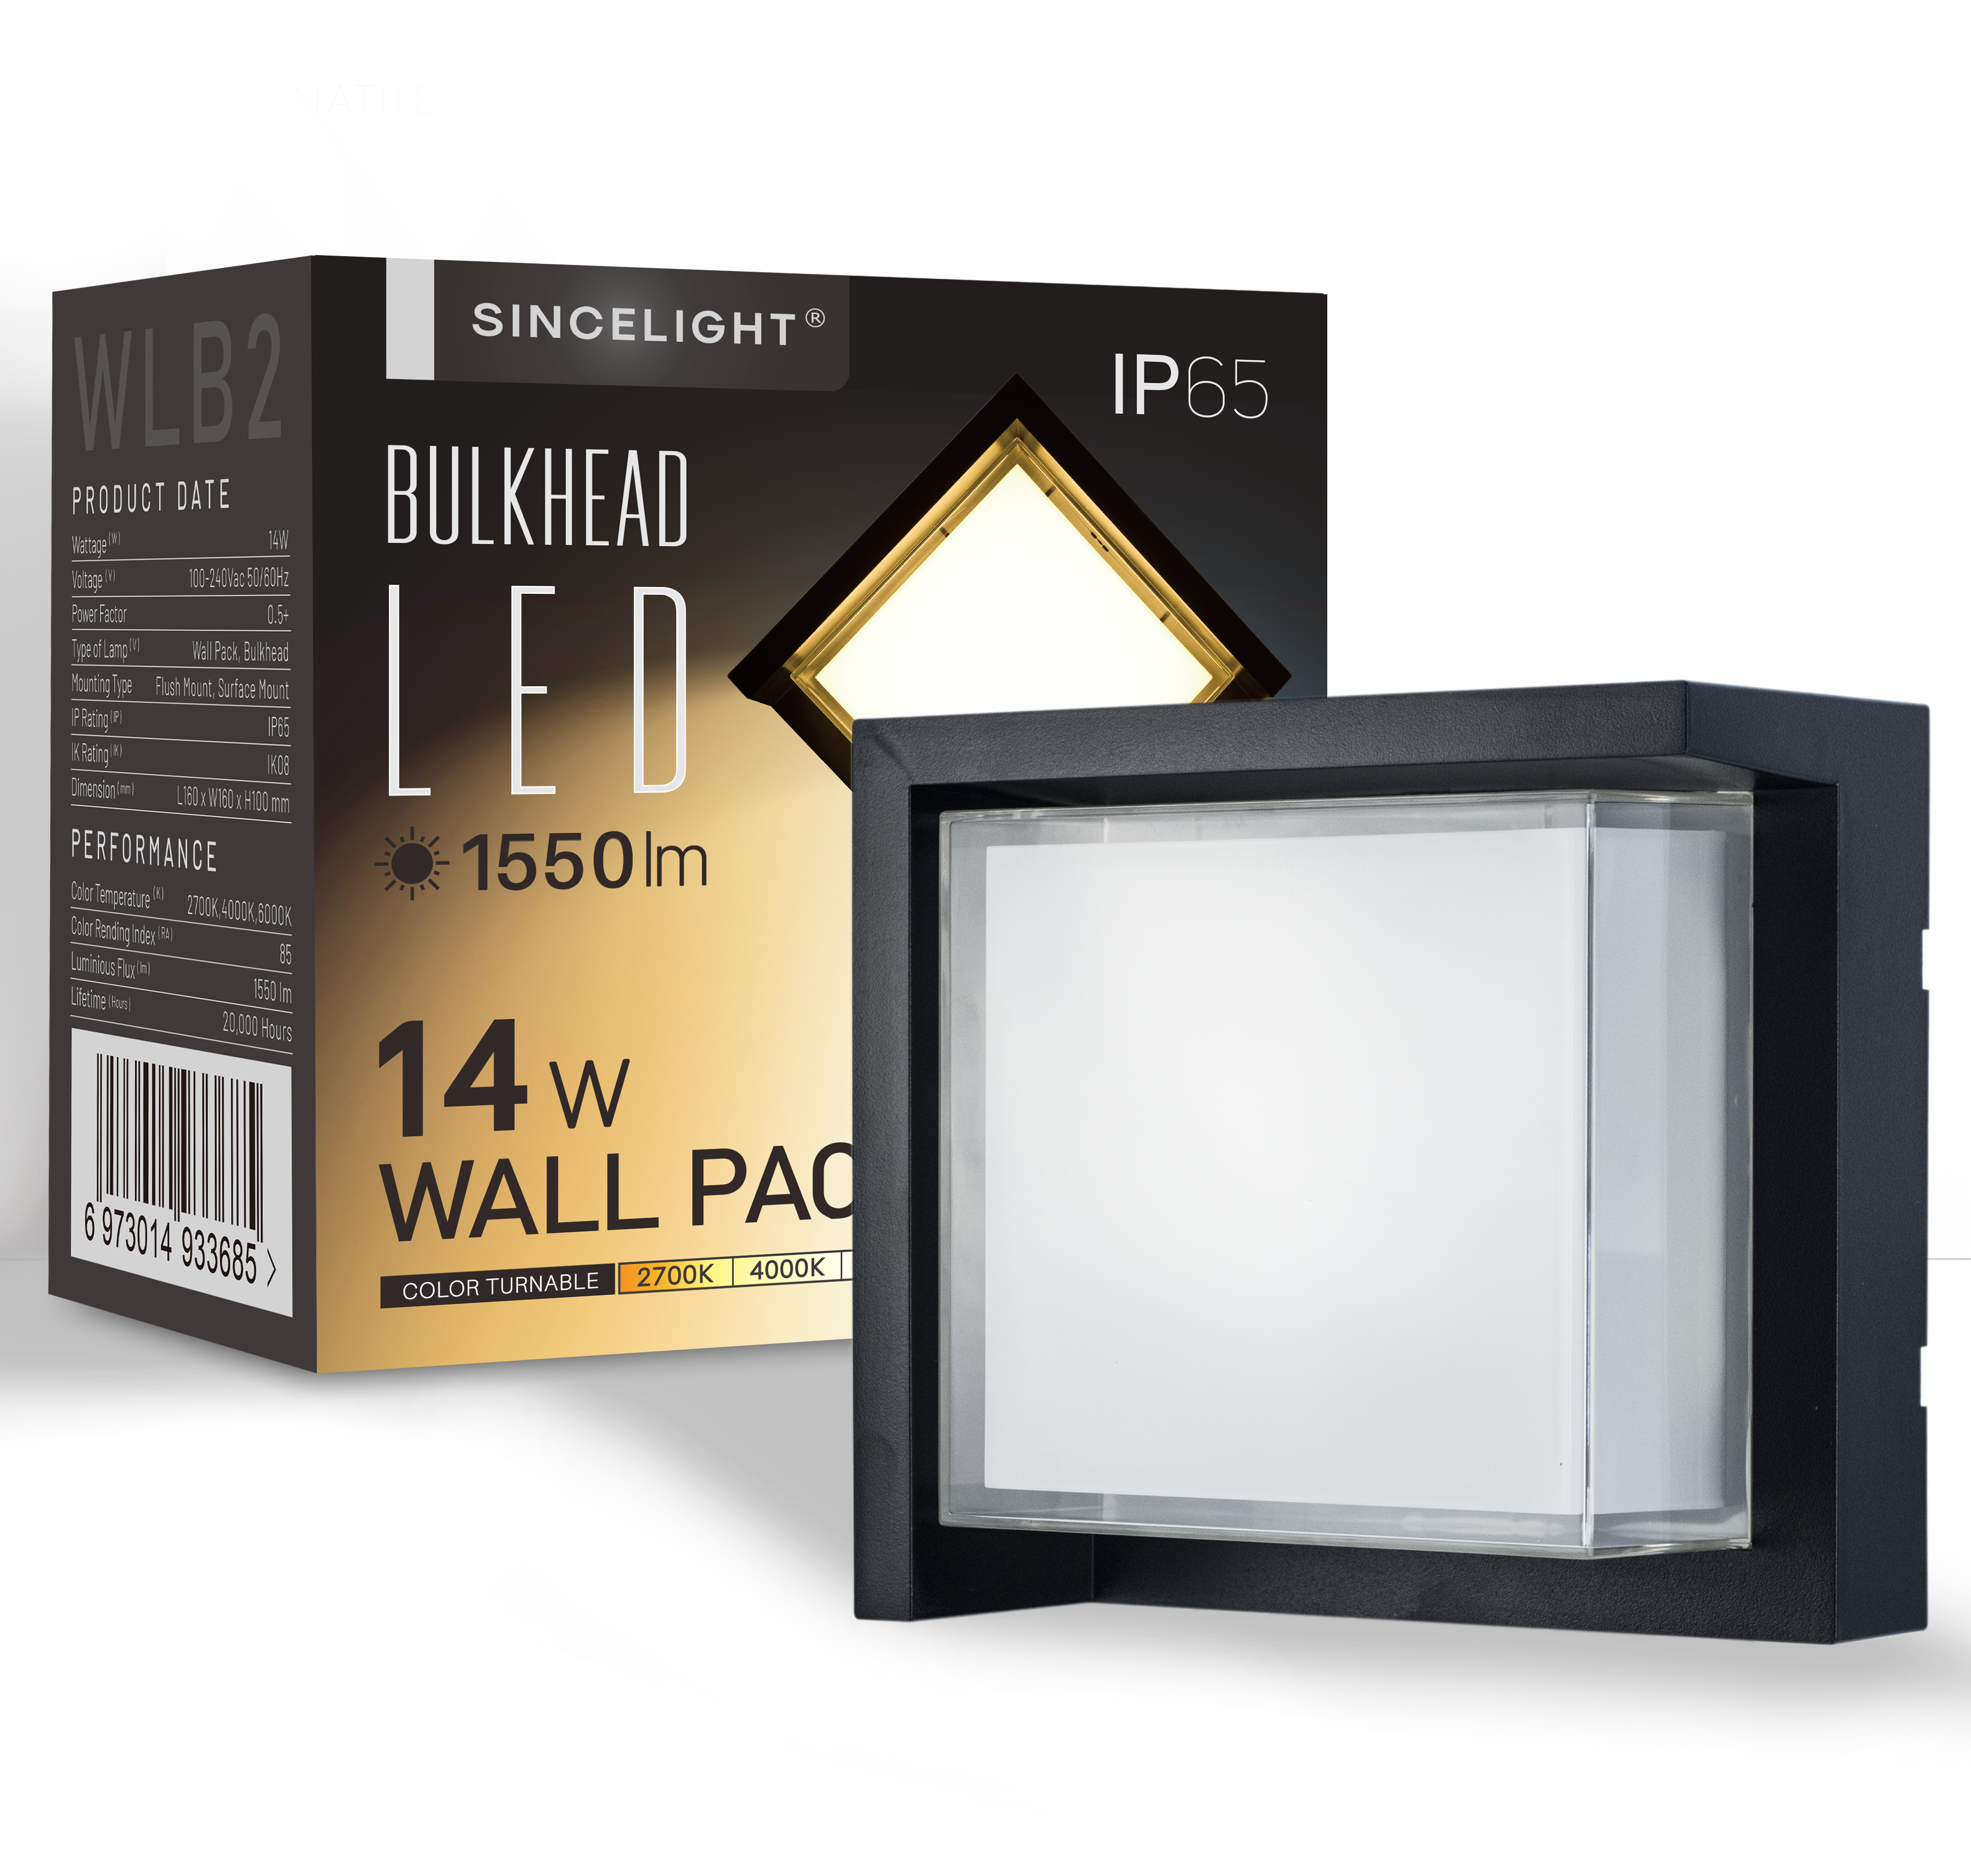 LED Wall Pack Light 14W ( WLB2 Bulkhead )